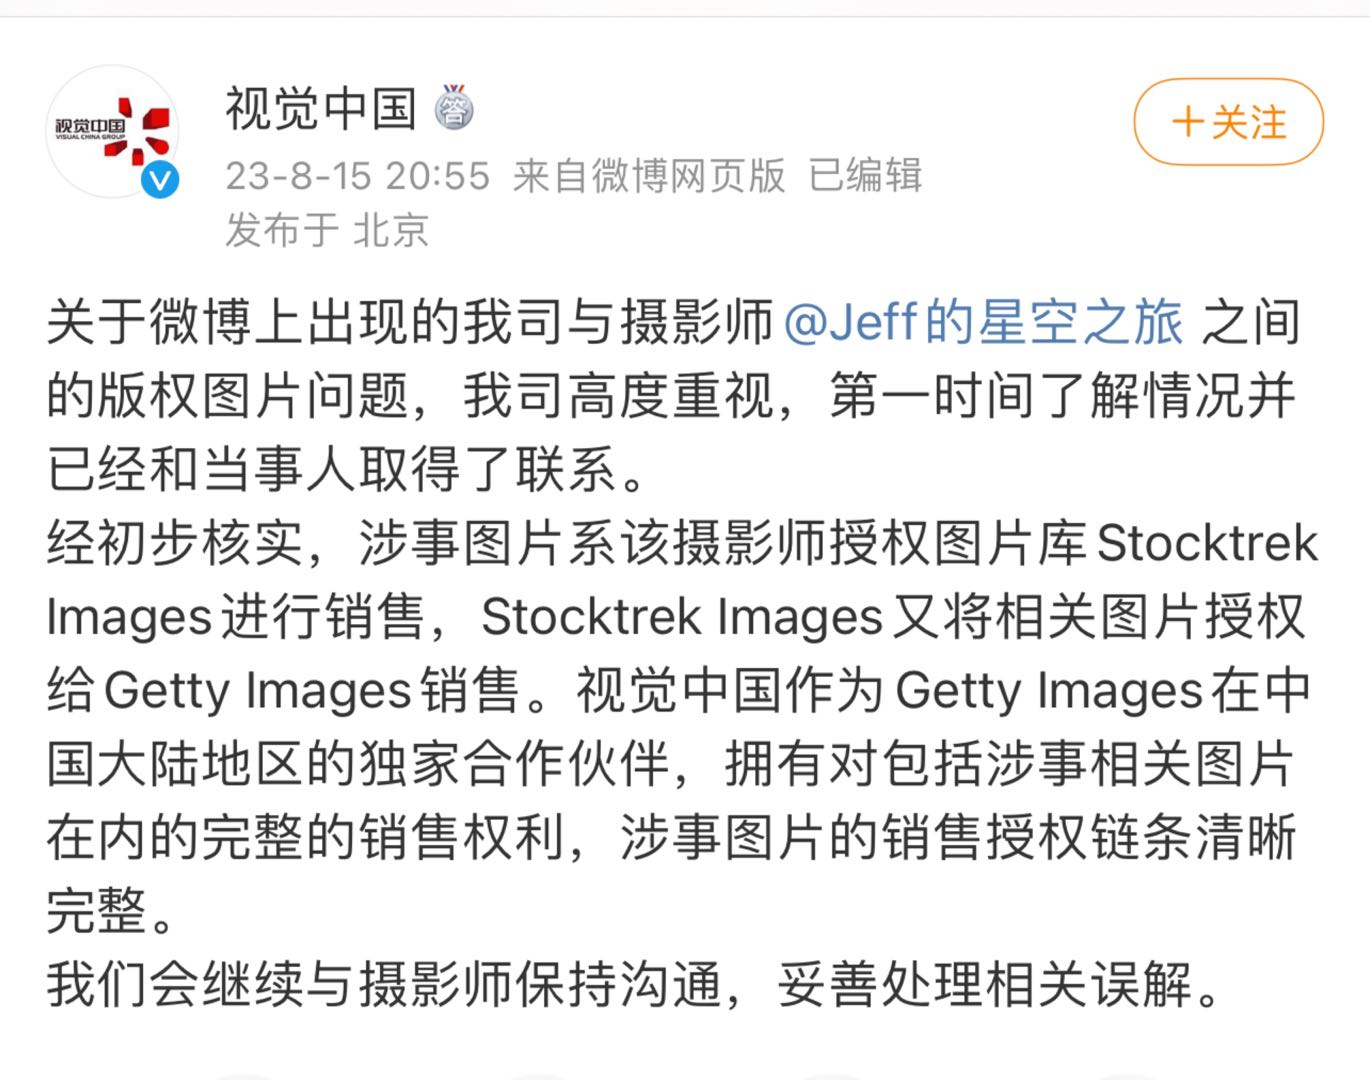 自己拍的照片被视觉中国告侵权，还要赔8万多元！摄影师要求解释，视觉中国回应……_戴建峰_公司_作品